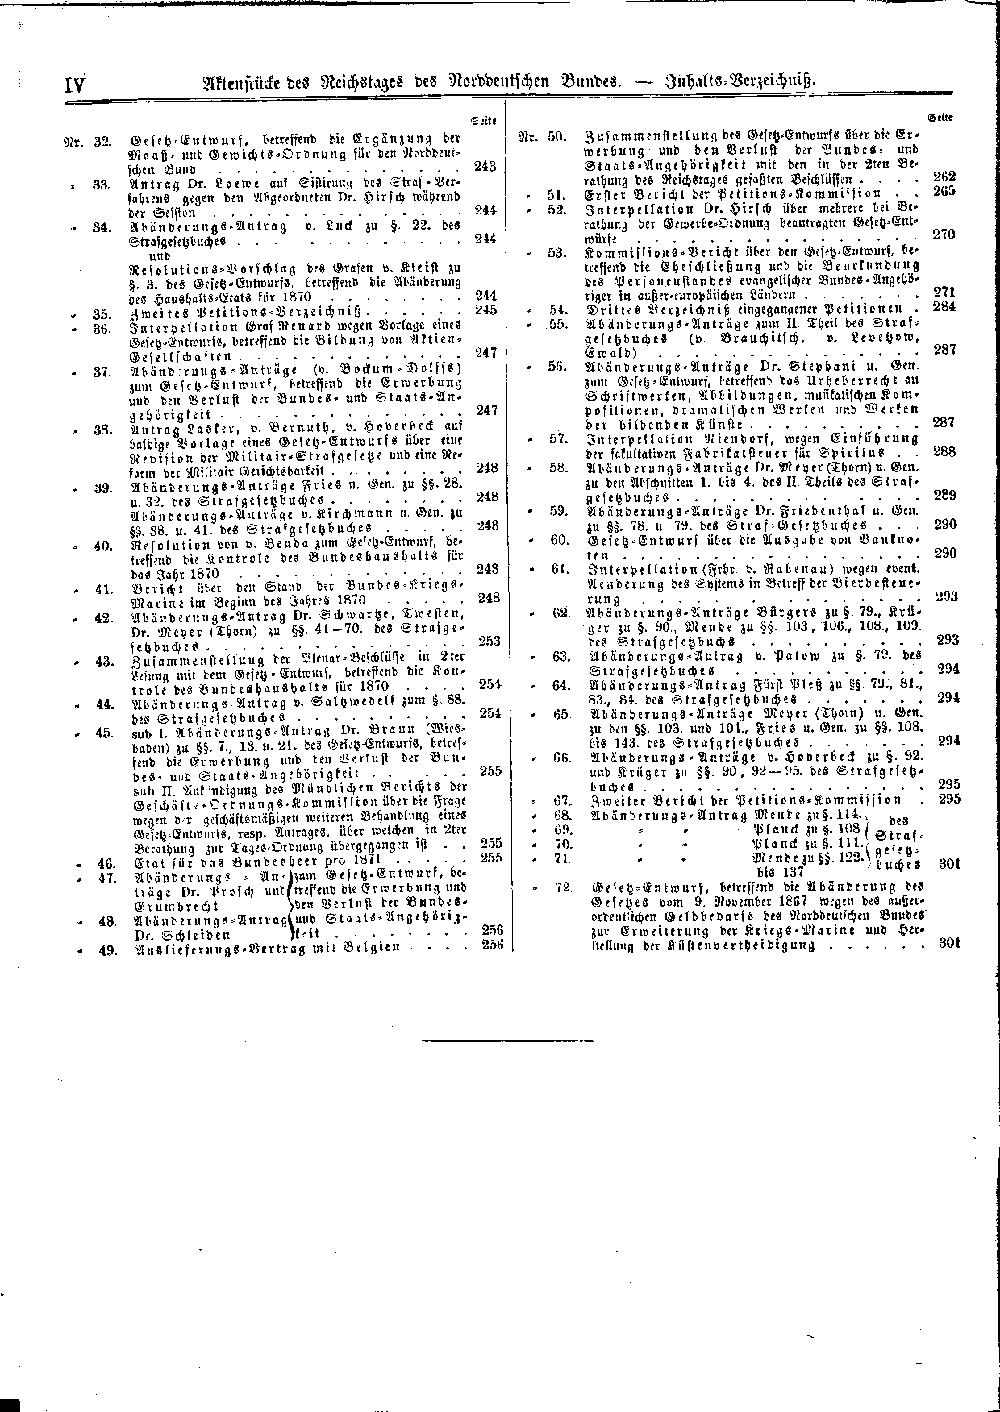 Scan der Seite IV